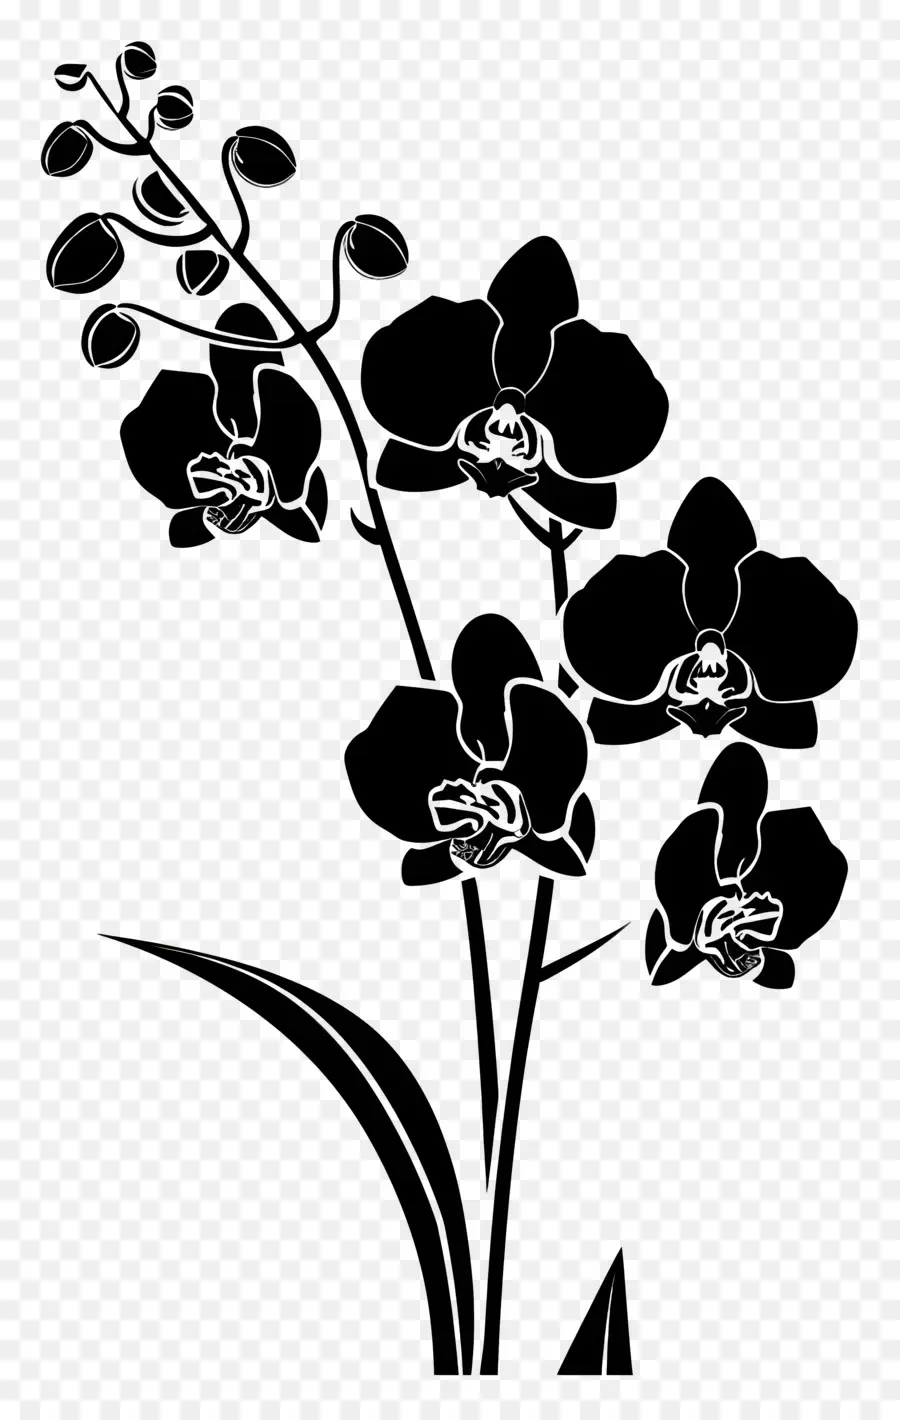 Fiori Silhouette Scarcia Scarica Fiori gocce d'acqua Fiori bianchi - Camera scura con fiori bianchi e gocce d'acqua